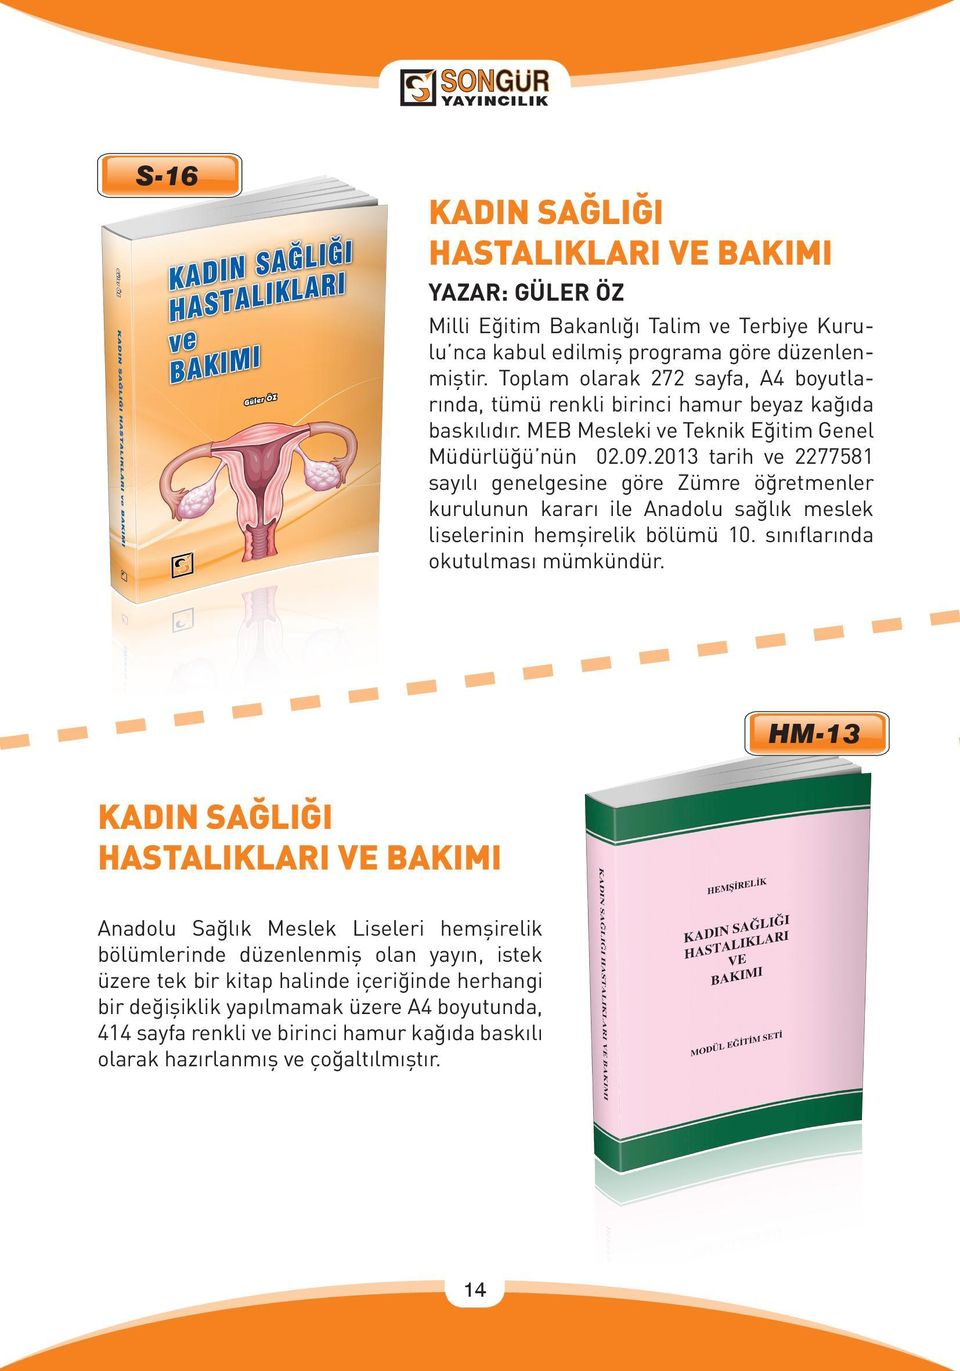 2013 tarih ve 2277581 sayılı genelgesine göre Zümre öğretmenler kurulunun kararı ile Anadolu sağlık meslek liselerinin hemşirelik bölümü 10. sınıflarında okutulması mümkündür.